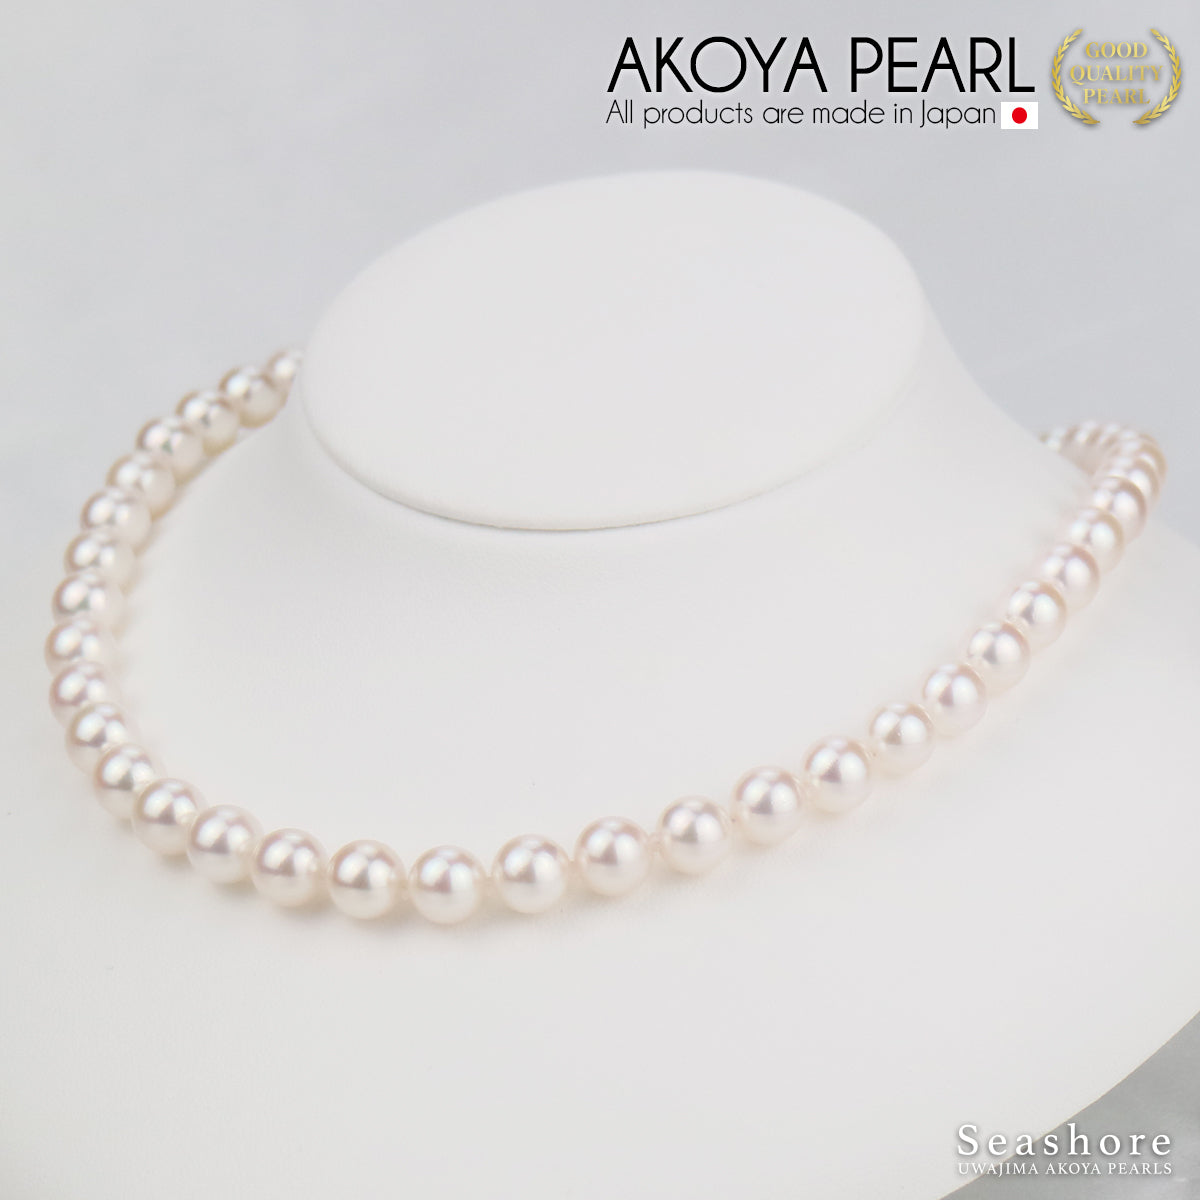 [花玉认证珍珠] 正装项链 2 件装 [8.0-8.5 毫米]（含耳环）Akoya 珍珠带收纳盒 [新日本珍珠研究所真品证书]